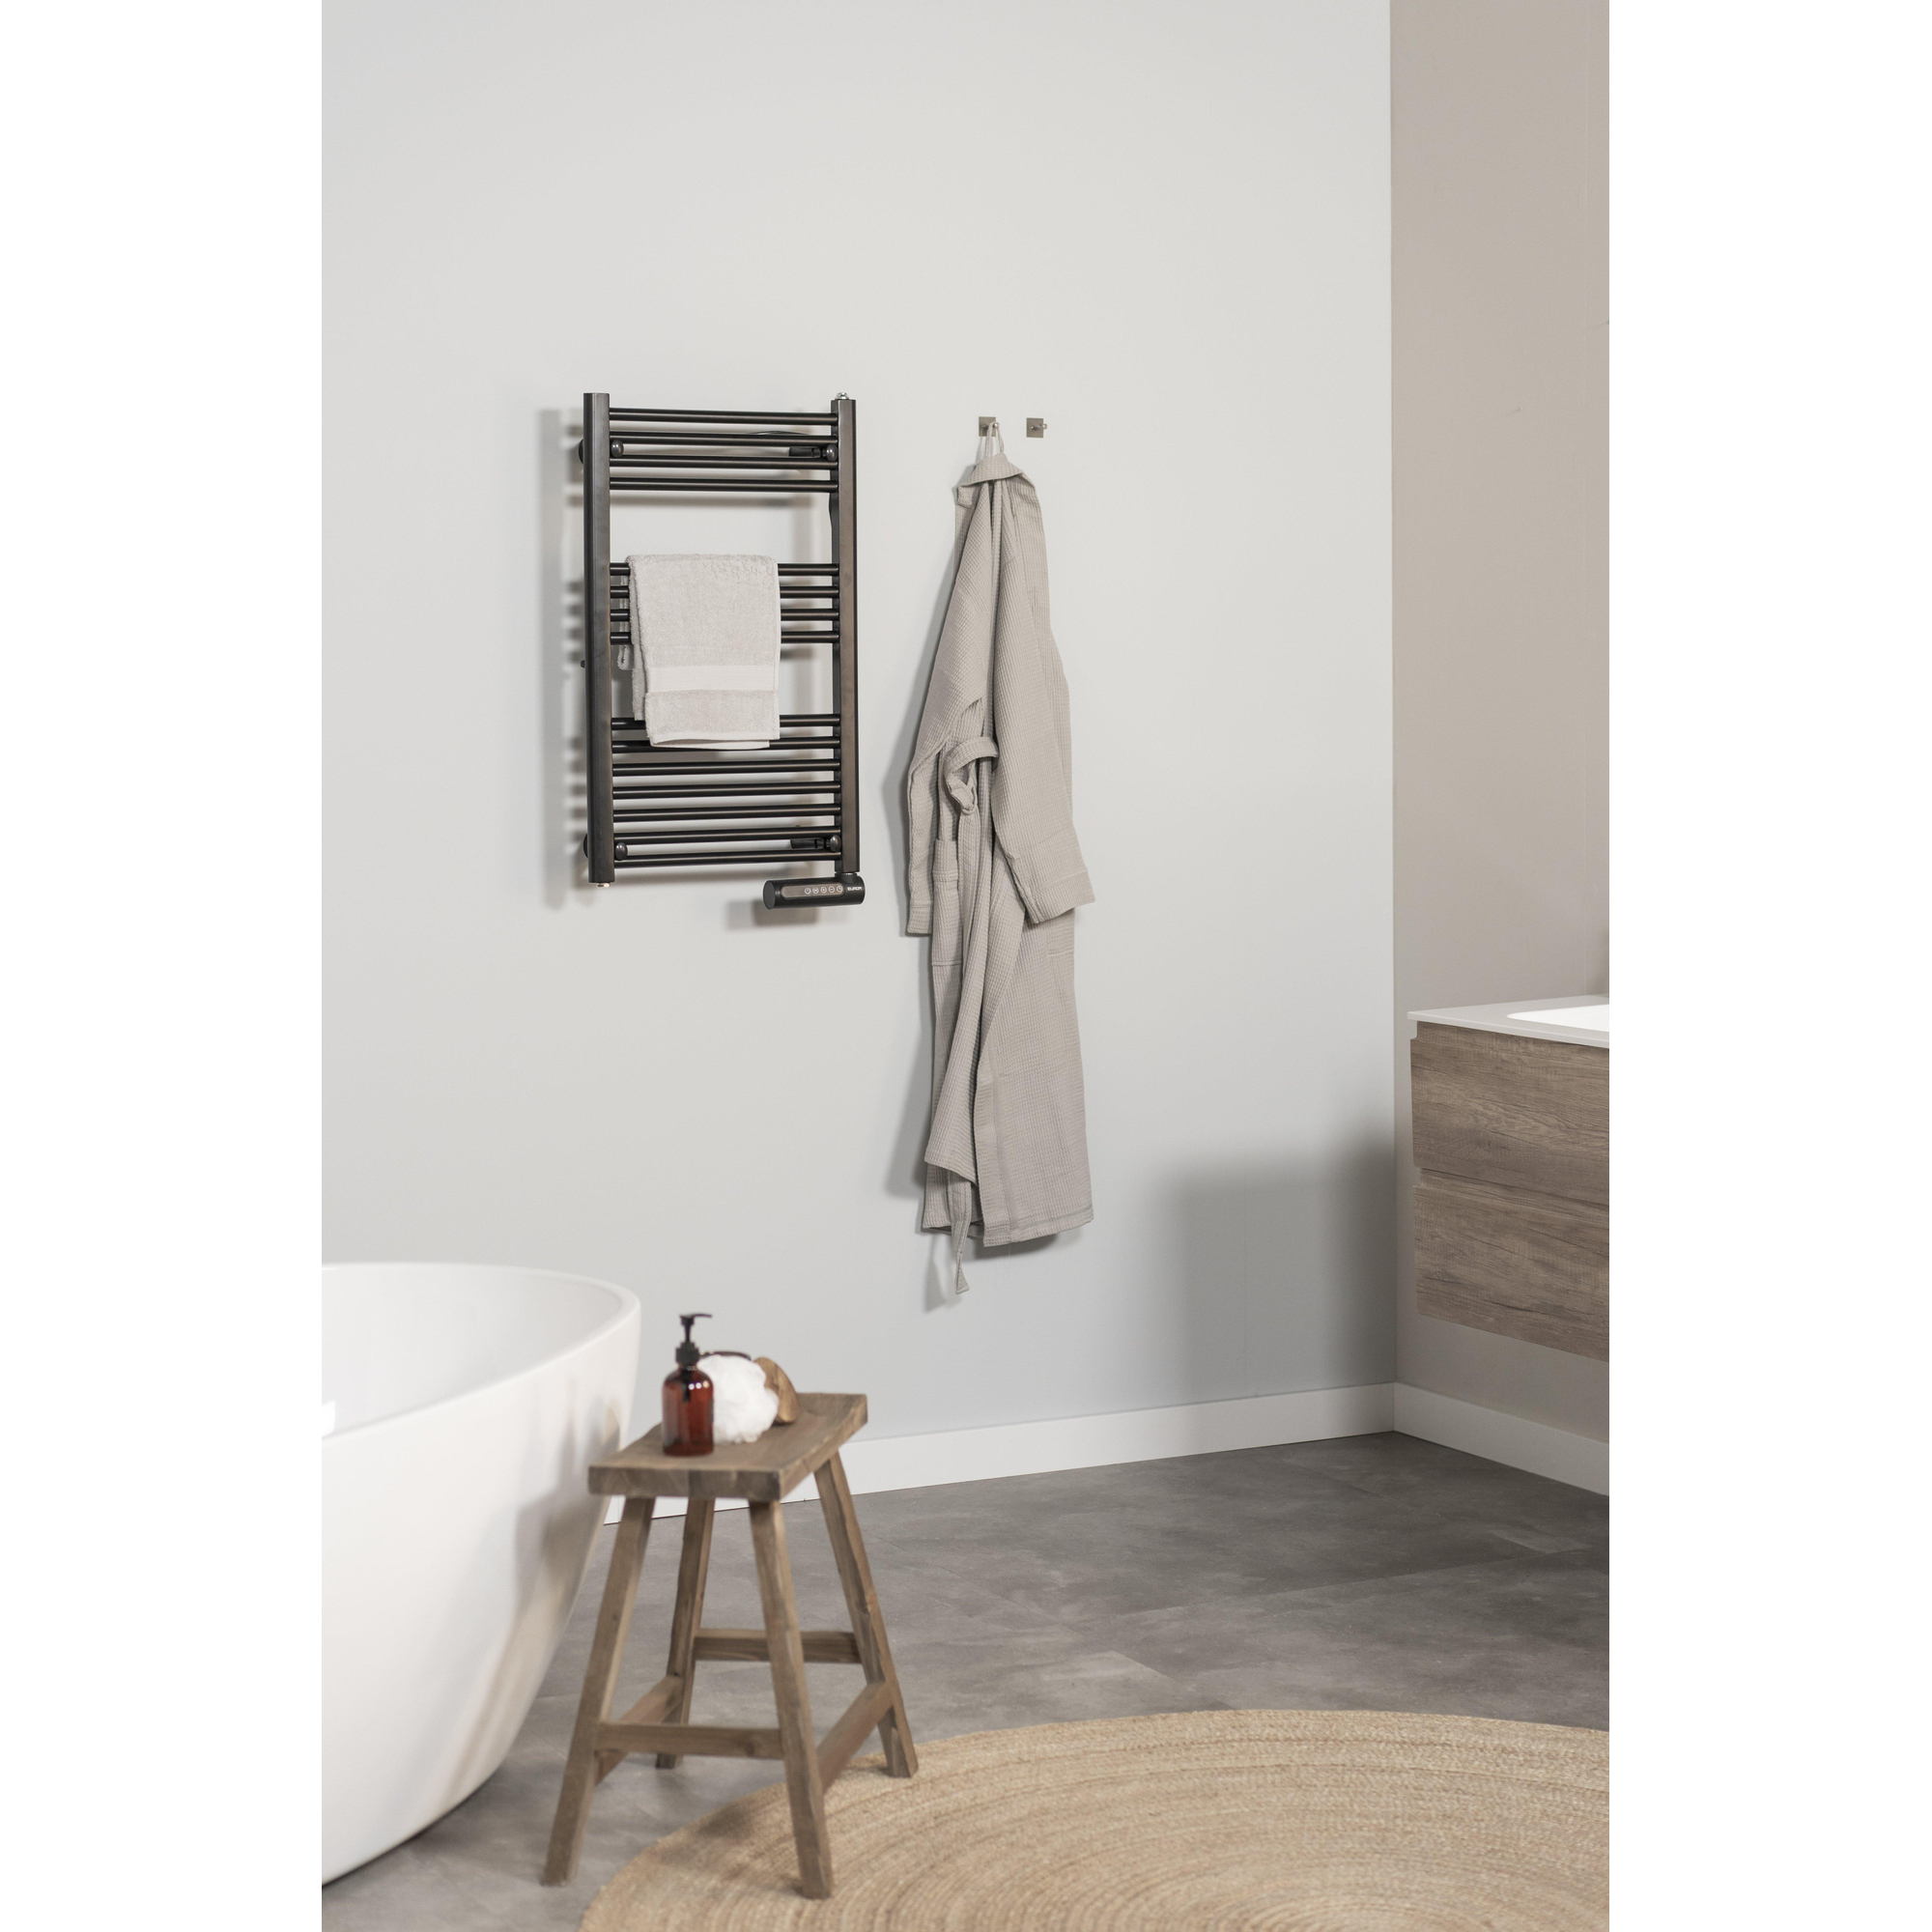 Eurom Sani-Towel 500 Sèche-serviette électrique 85x50cm 500watt noir -  352528 